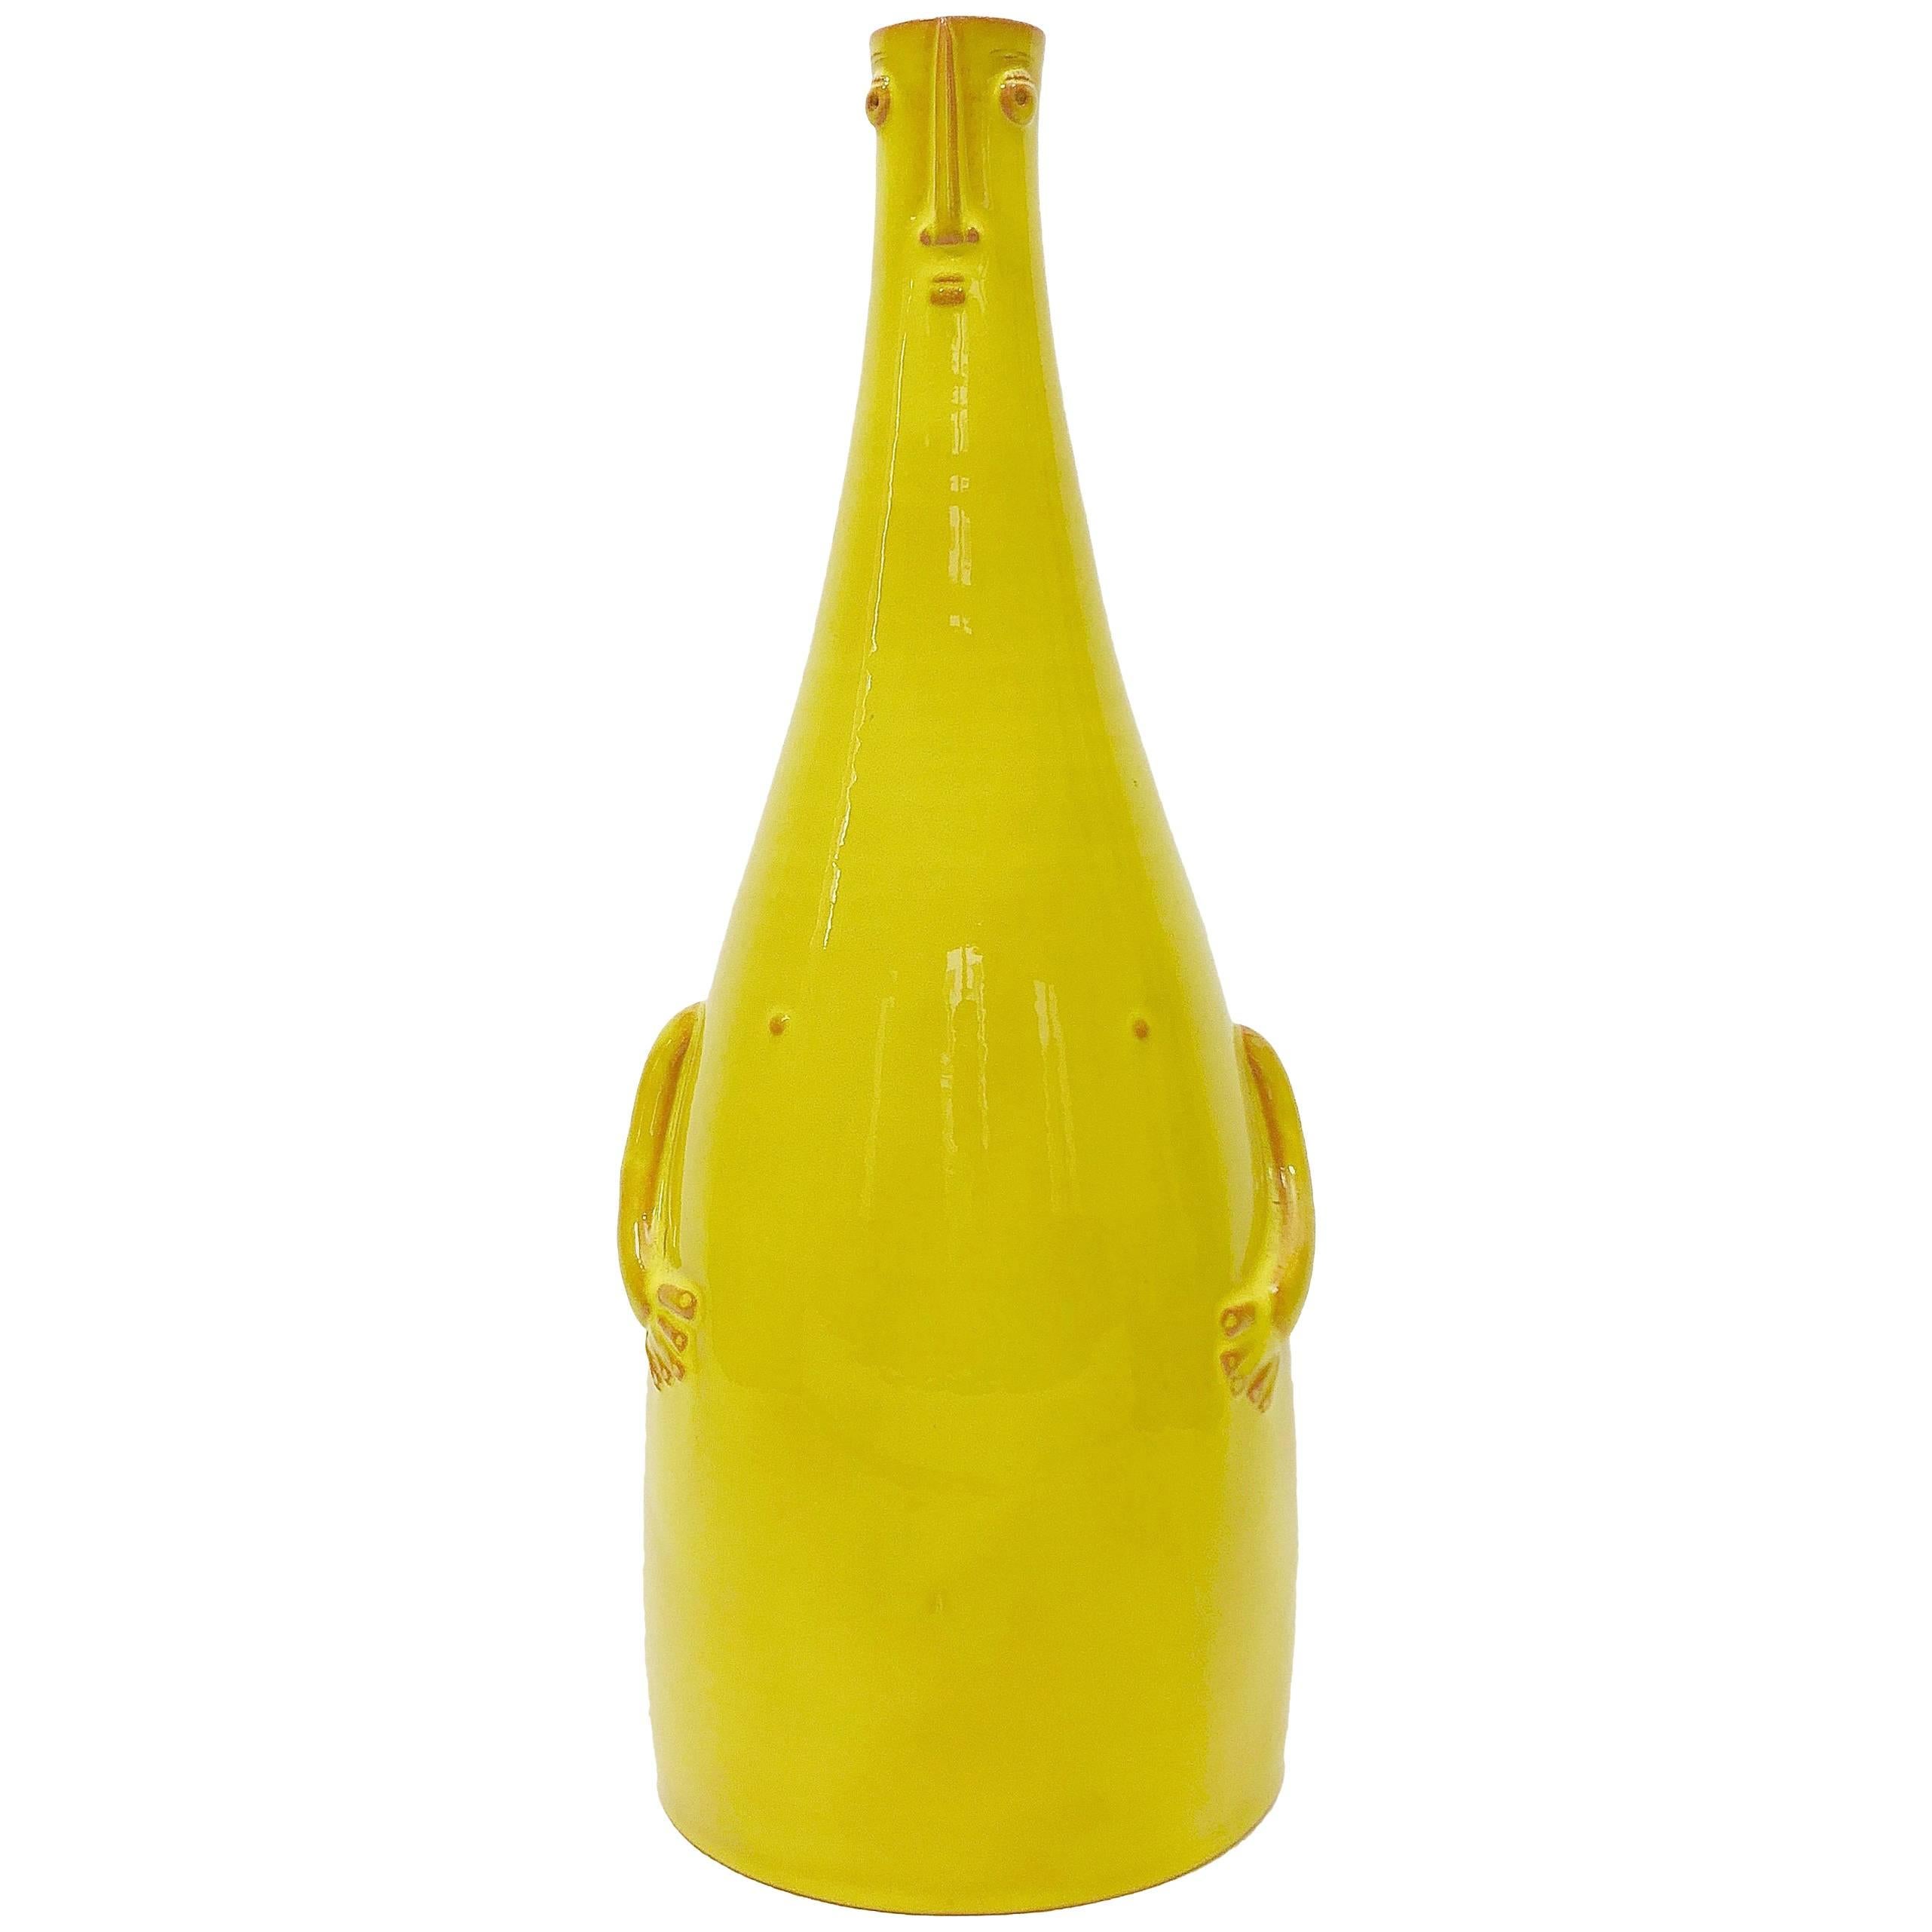 Dalo, Ceramic Lamp Base Glazed in Yellow